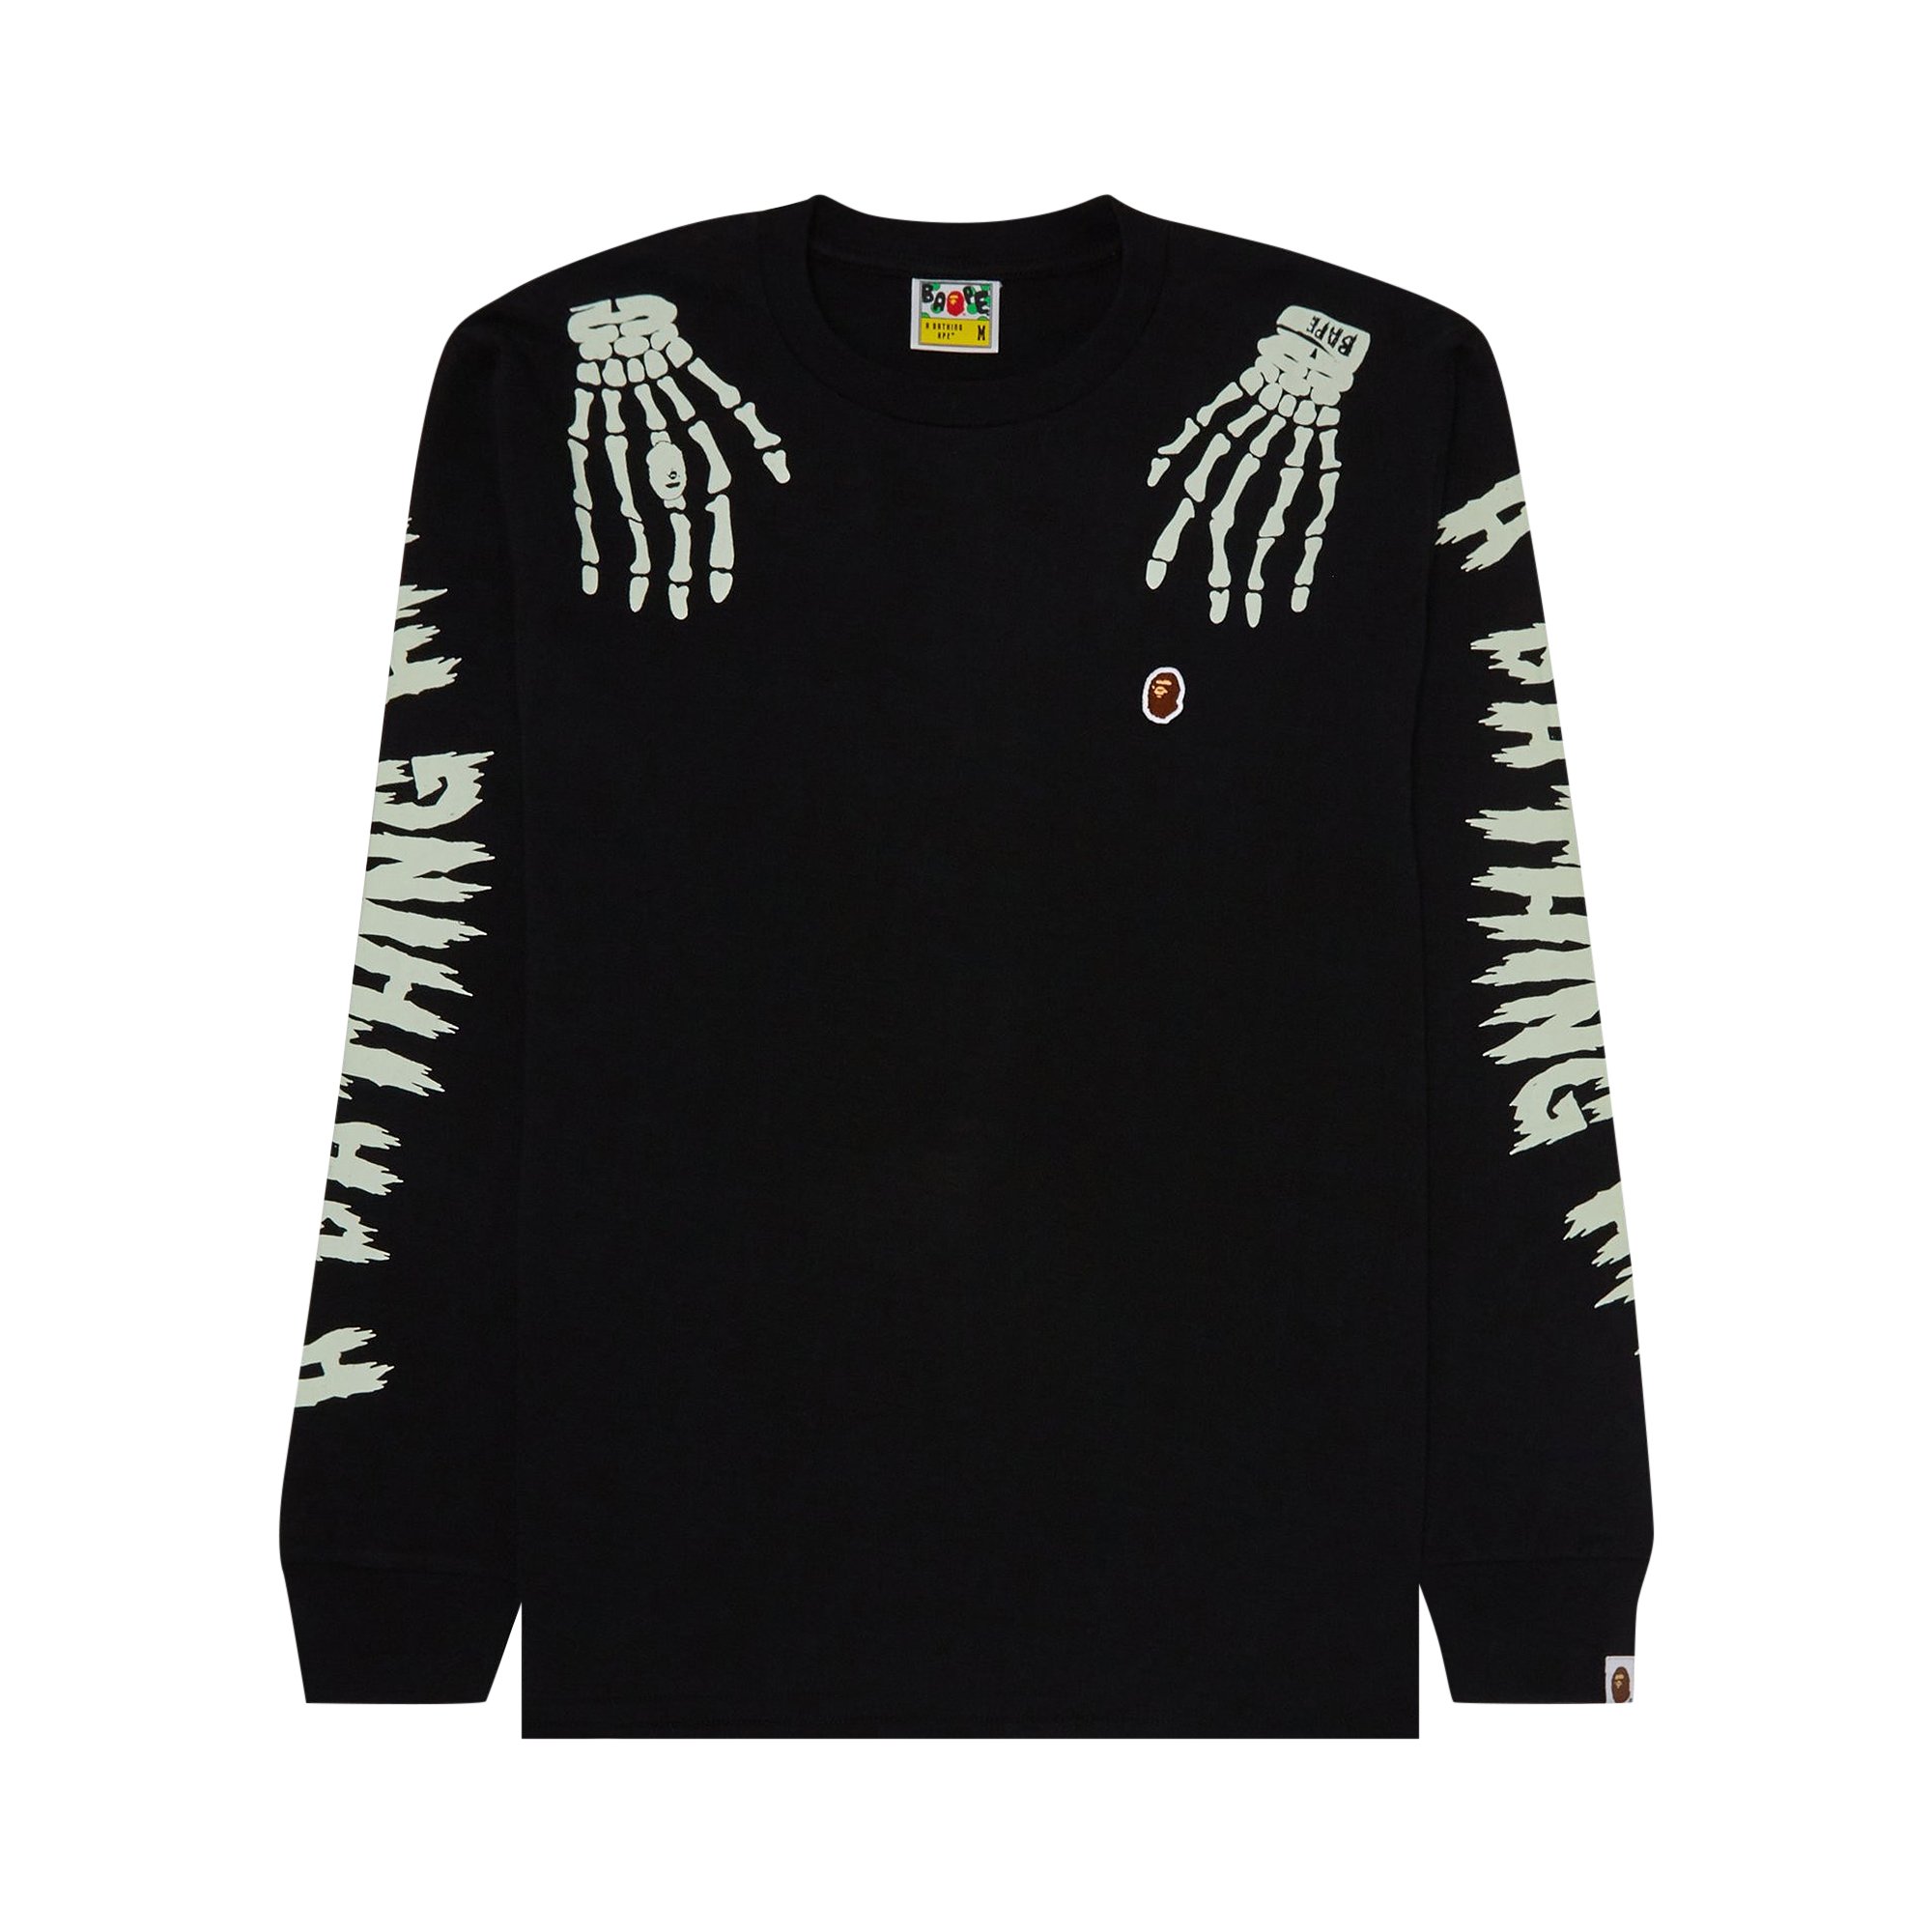 Buy BAPE Halloween Skull Glow In The Dark Long-Sleeve Tee 'Black